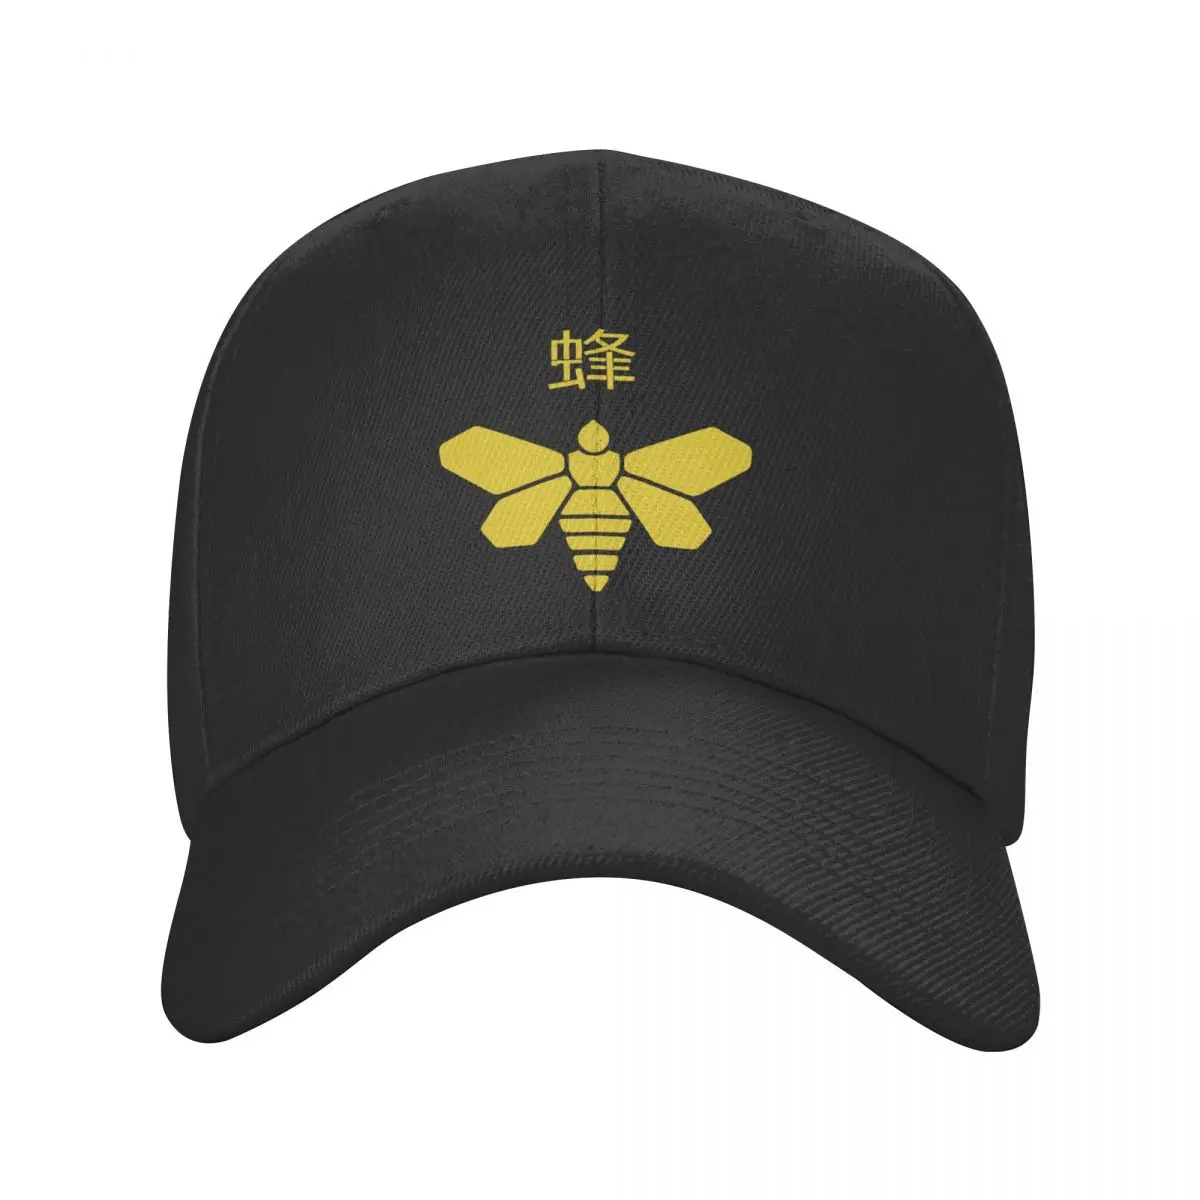 

Punk Unisex Methylamine Bee Baseball Cap Adult Breaking Bad Tv Show Adjustable Dad Hat for Men Women Trucker Cap Snapback Hats